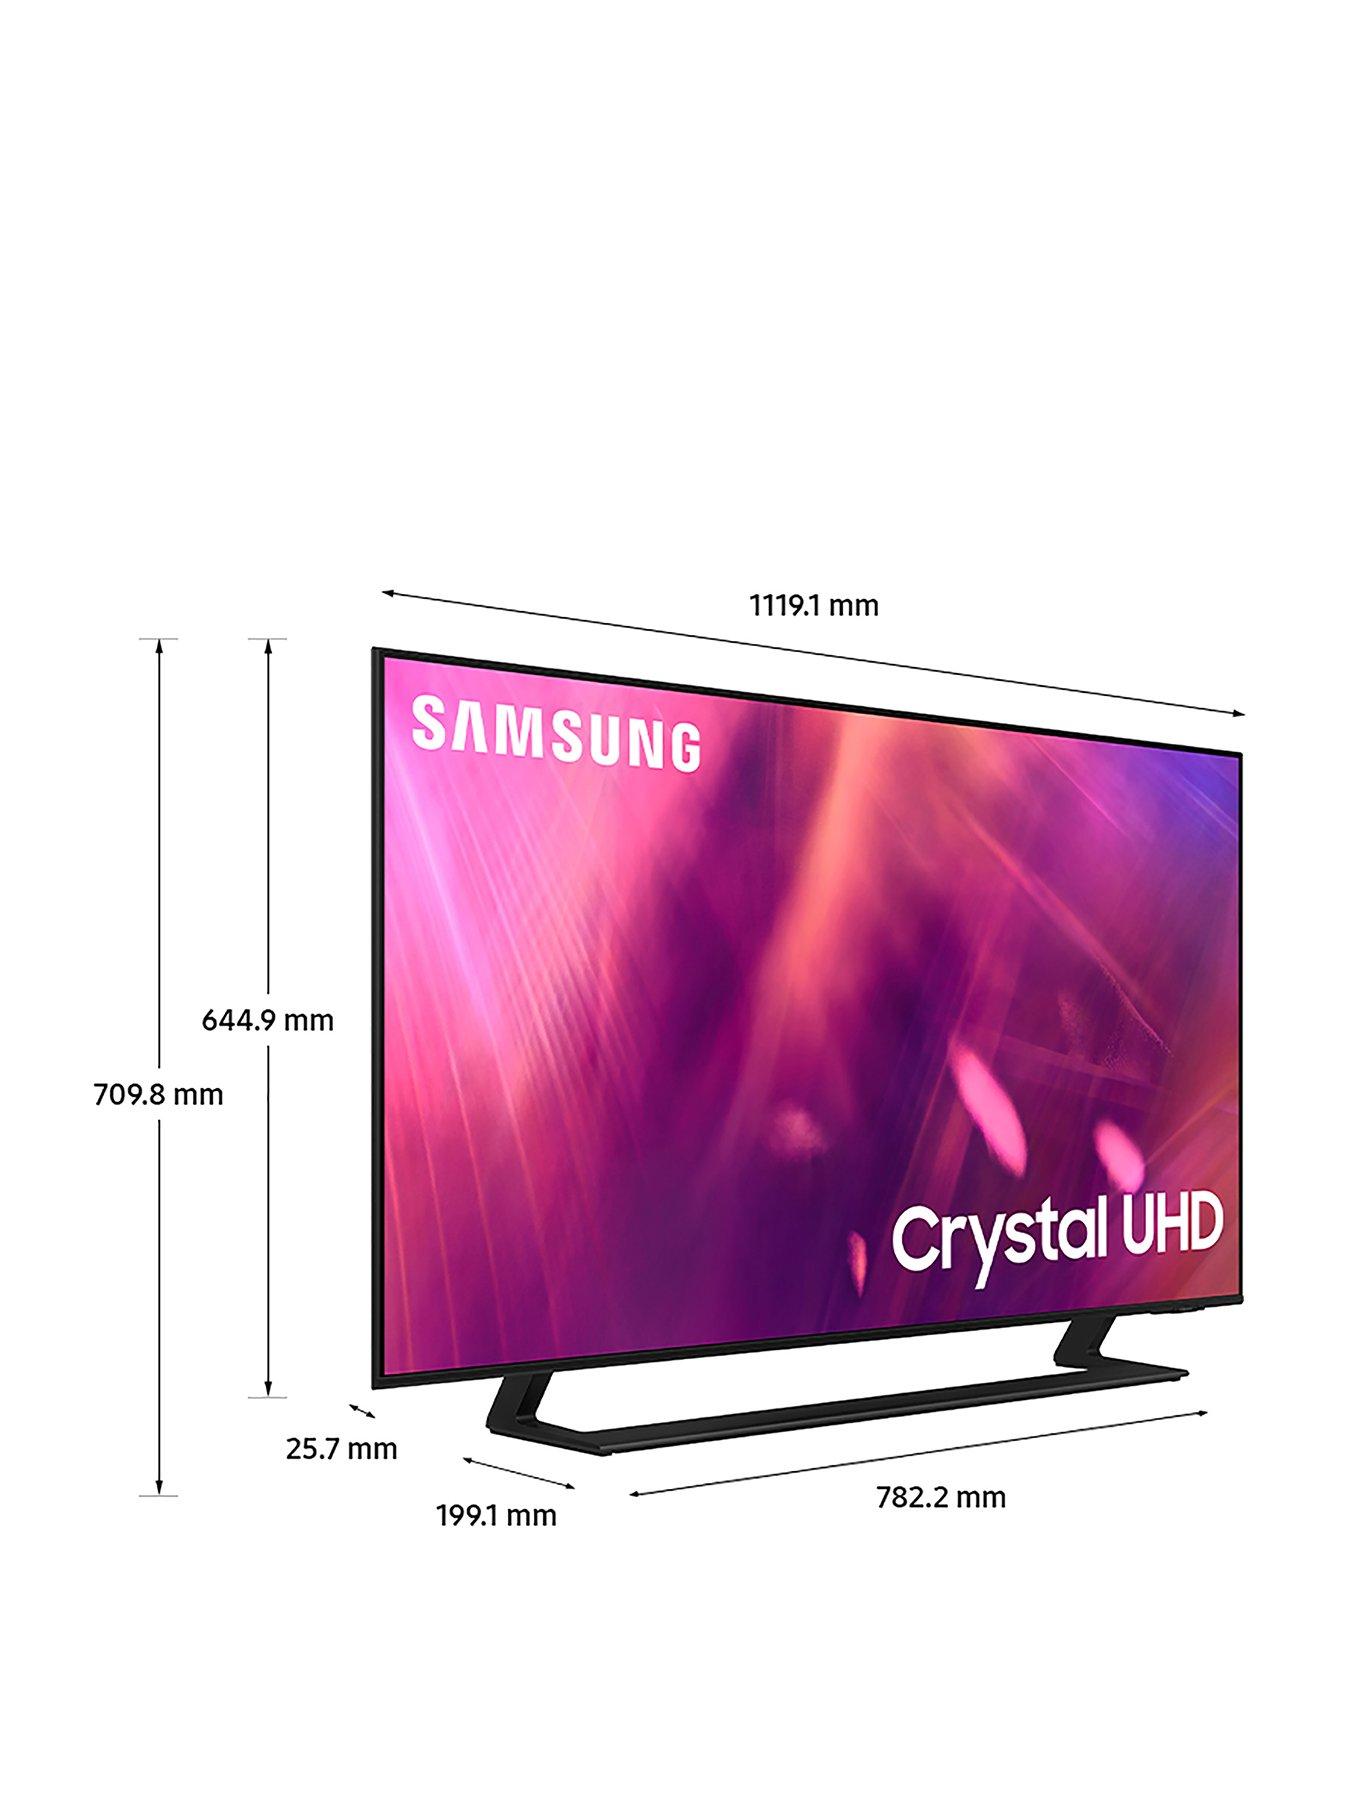 30++ 55 au9000 crystal uhd 4k smart tv 2021 ideas